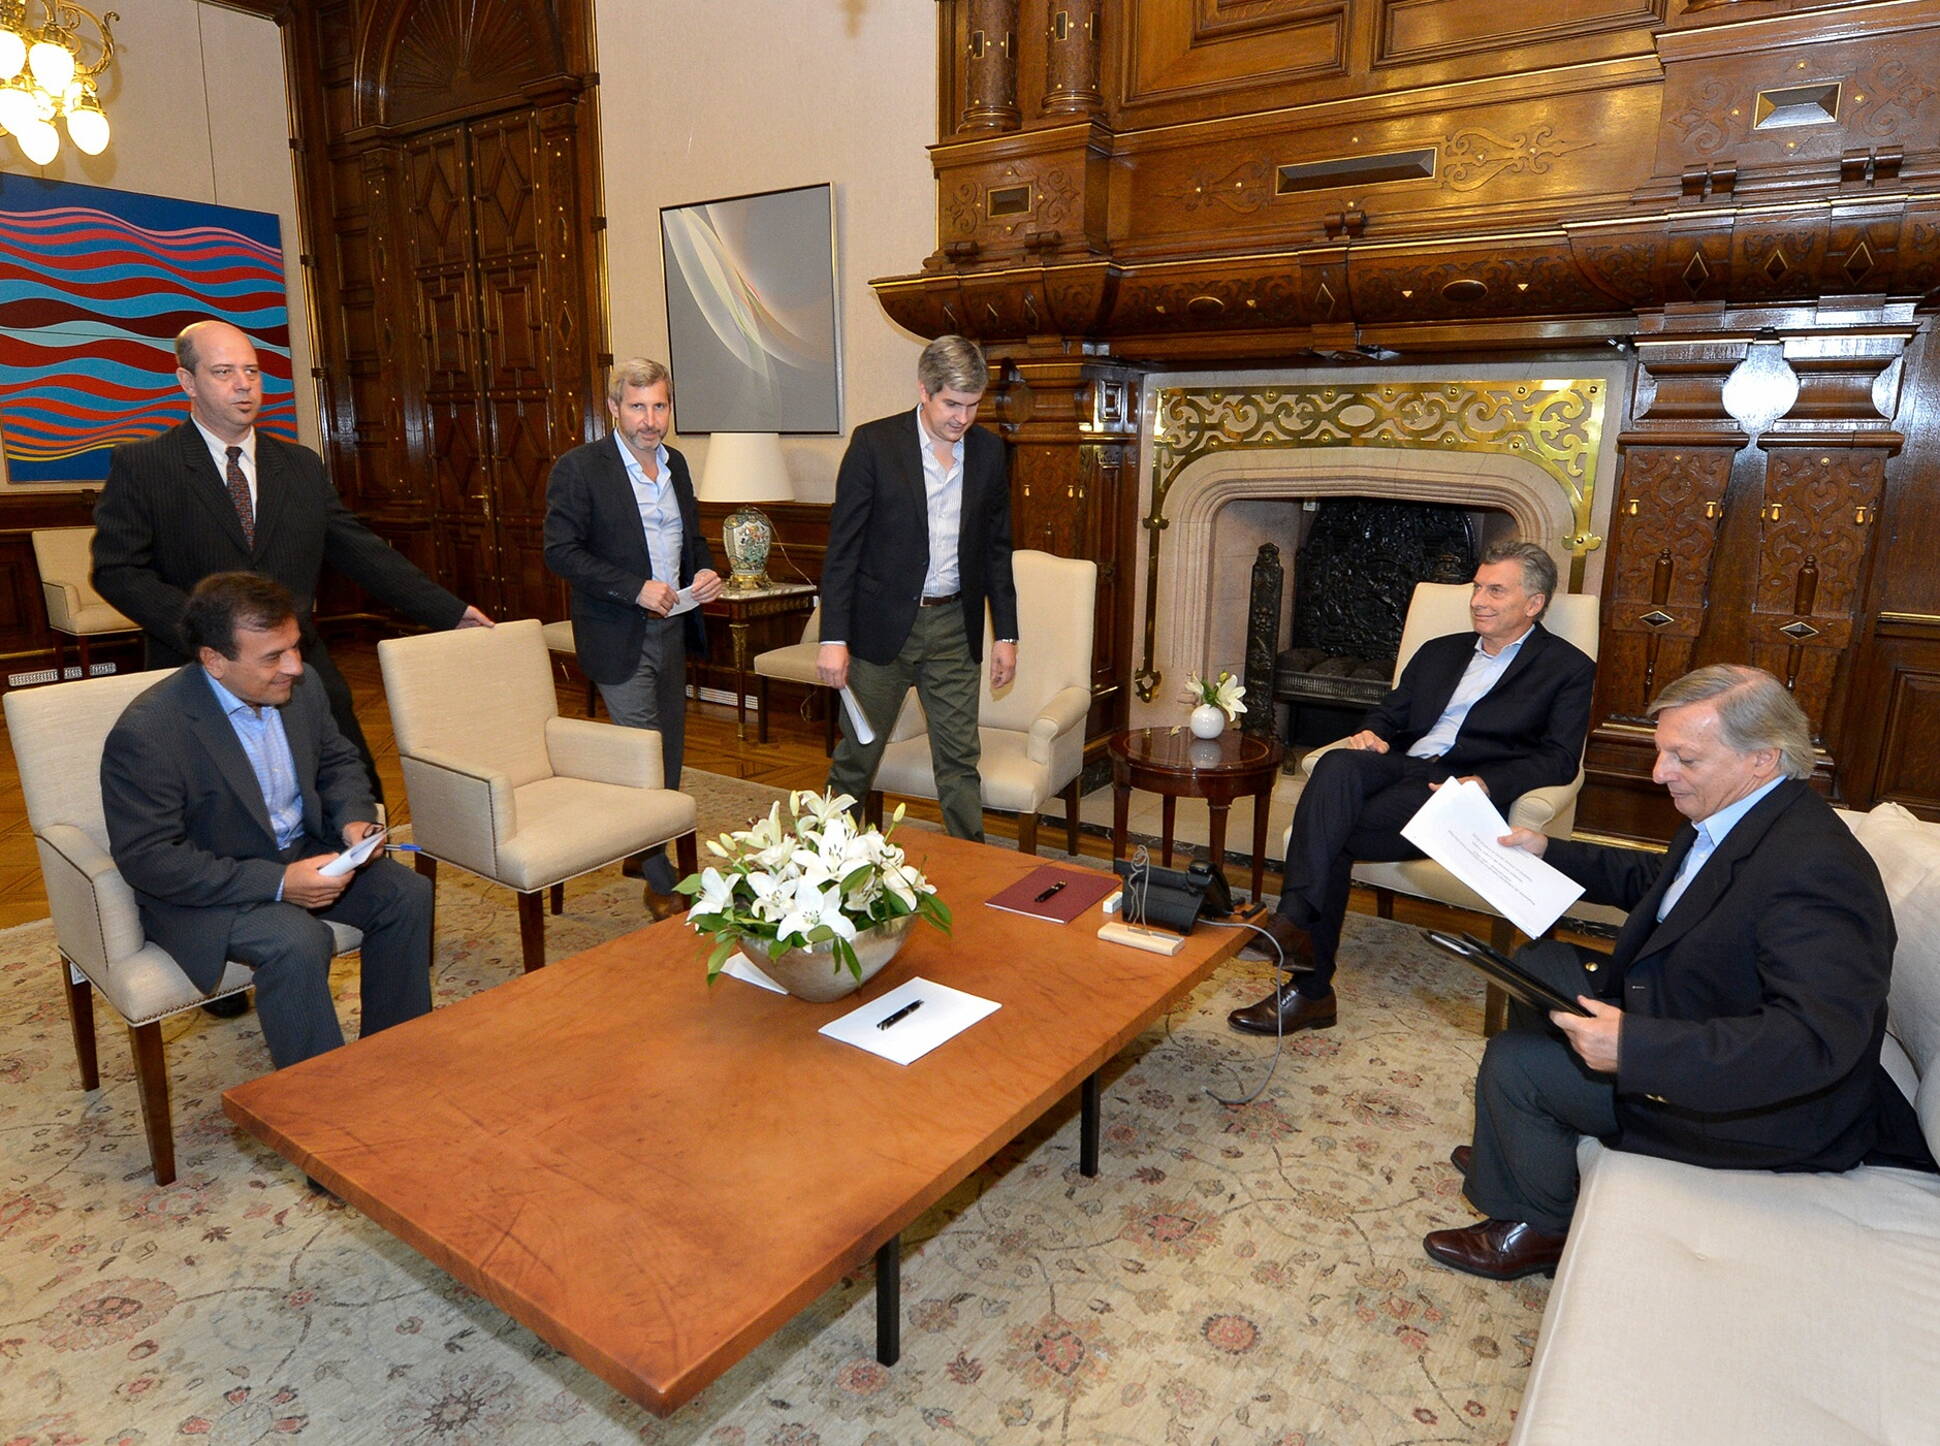 El presidente Mauricio Macri encabezó una reunión de coordinación de gobierno